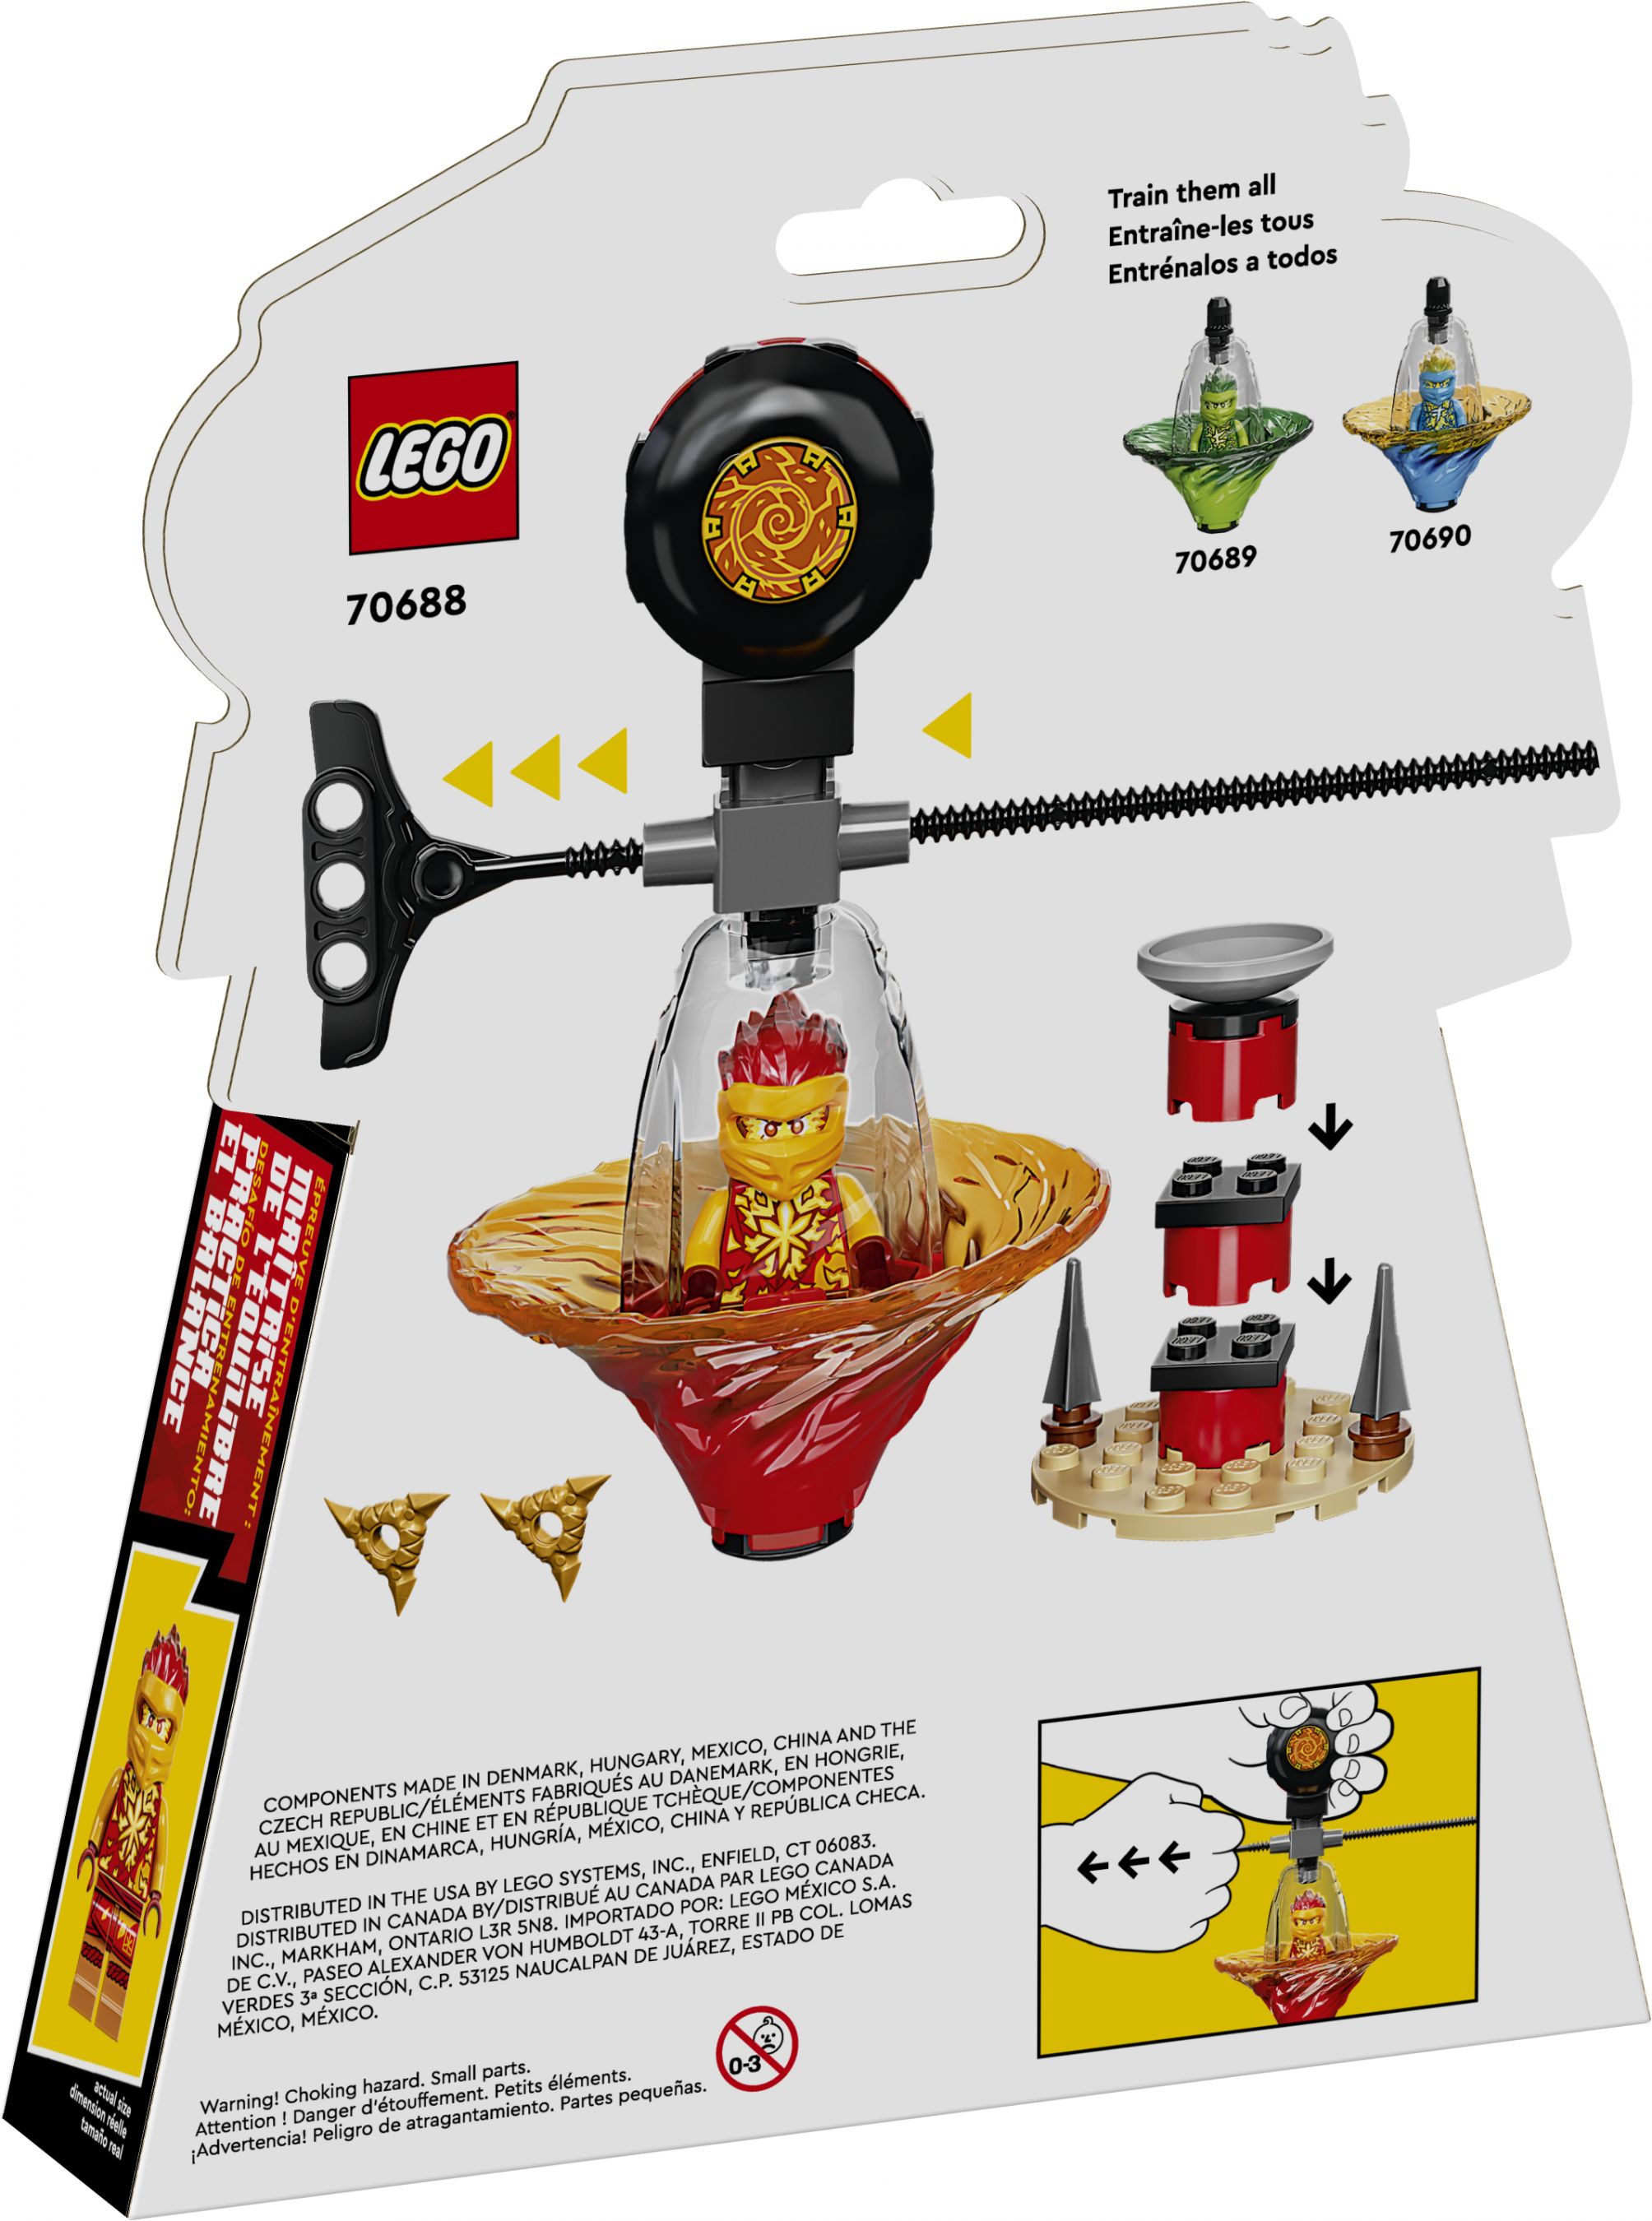 LEGO Ninjago 70688 Kais Spinjitzu-Ninjatraining LEGO_70688_Box5_V39.jpg